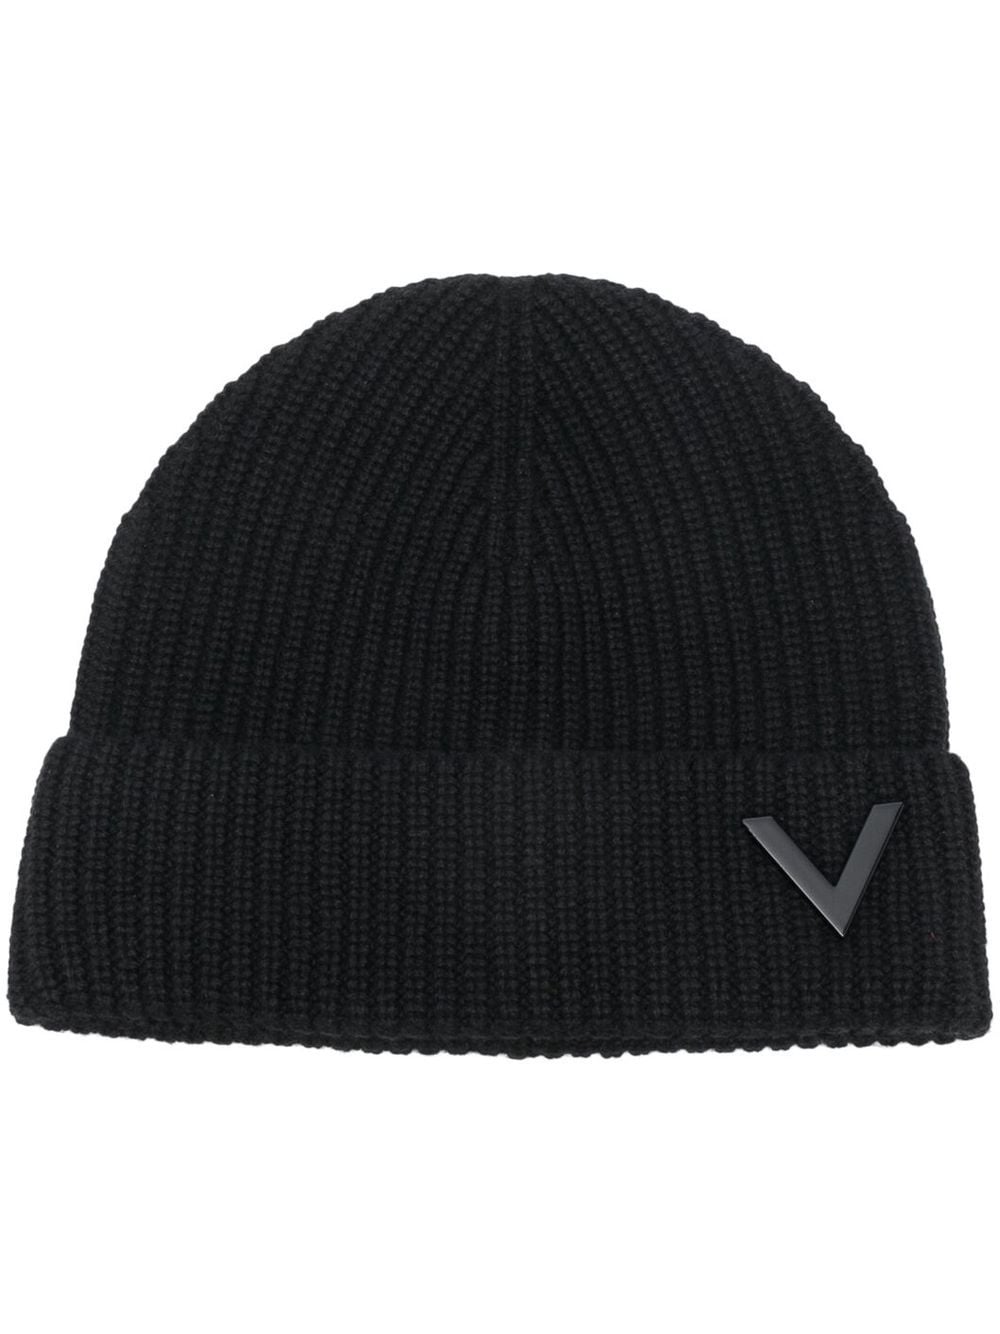 Valentino Garavani VLogo Signature beanie hat - Black von Valentino Garavani